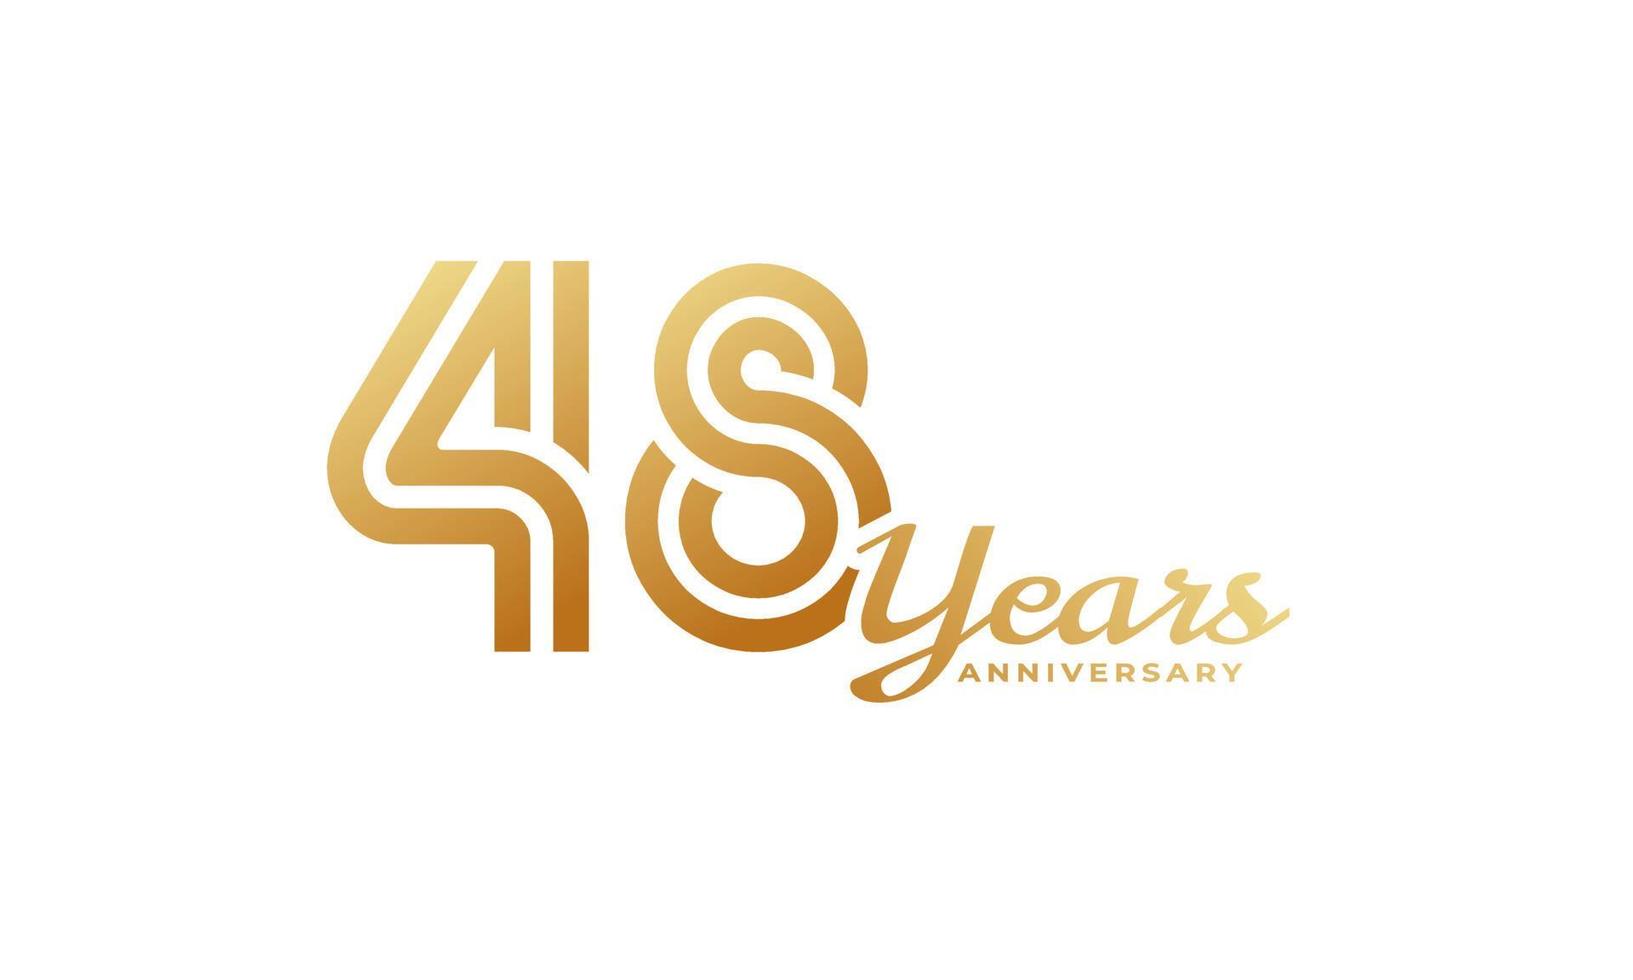 Celebrazione dell'anniversario di 48 anni con colore dorato della grafia per eventi celebrativi, matrimoni, biglietti di auguri e inviti isolati su sfondo bianco vettore